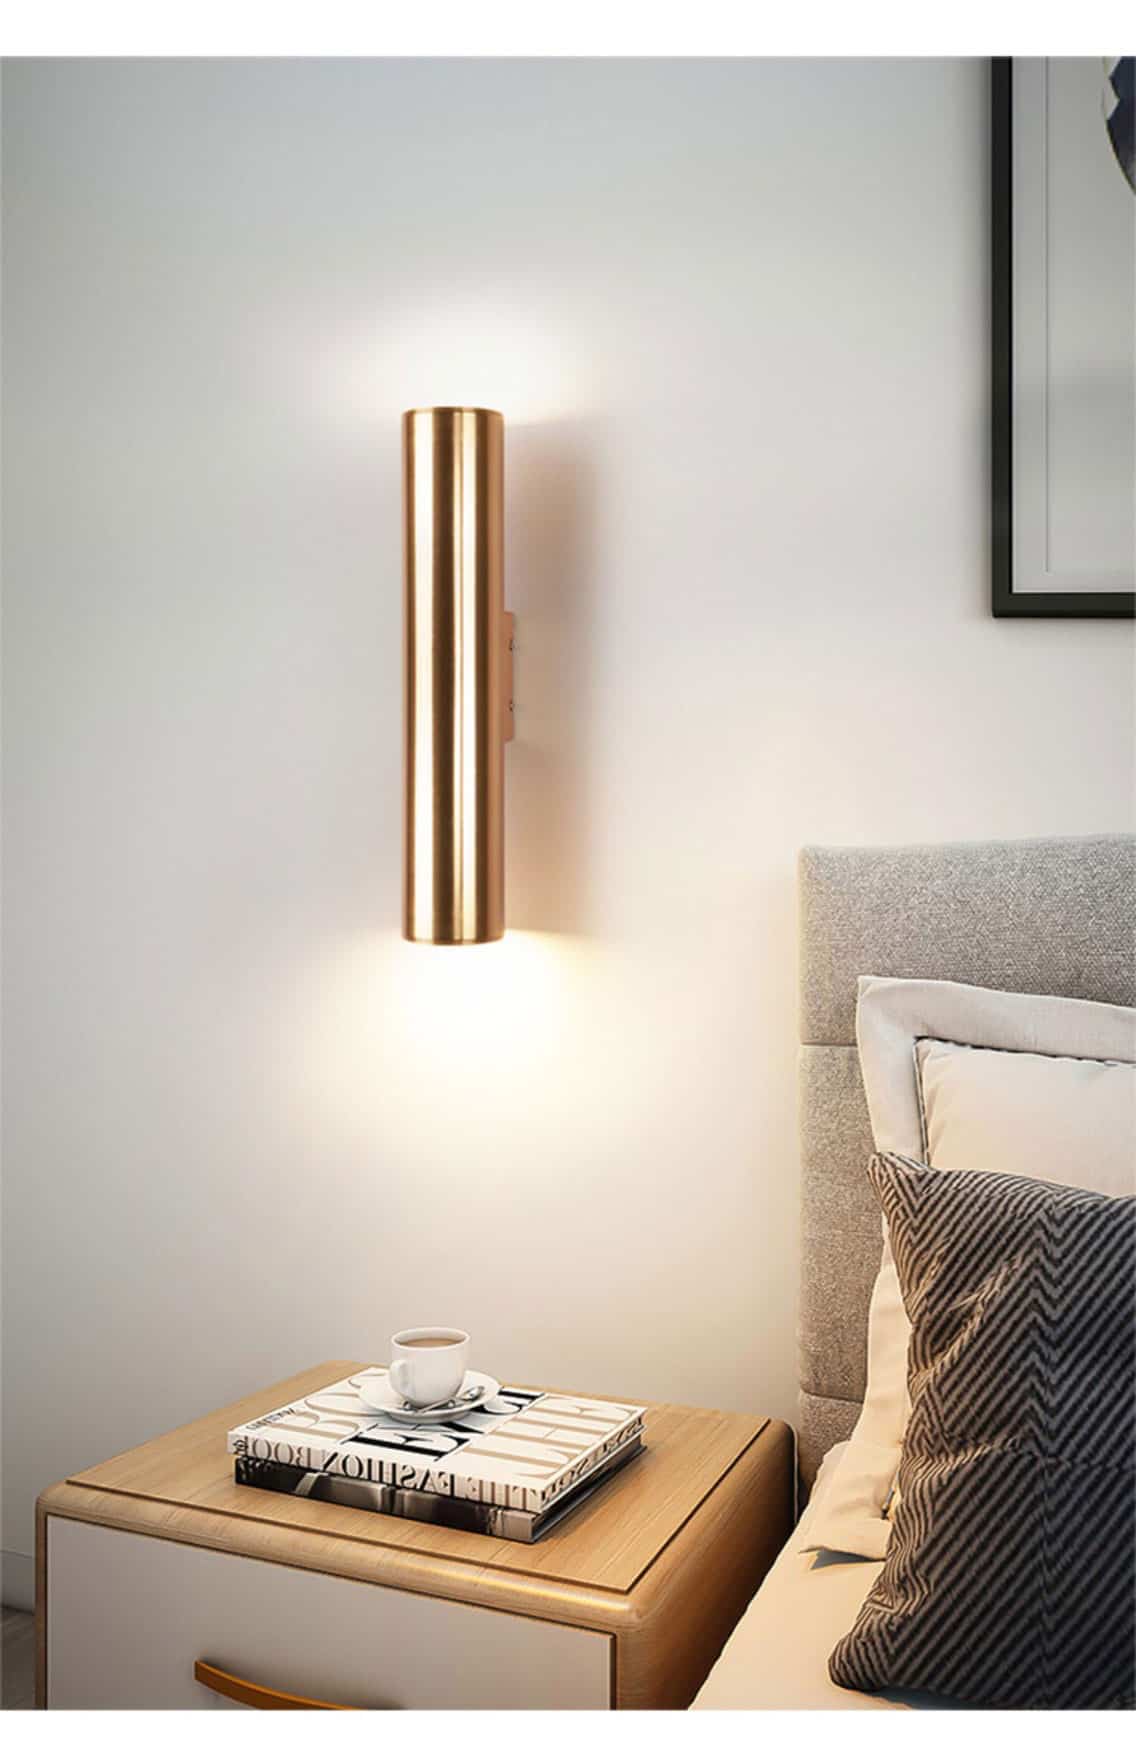 Đèn gắn tường phòng ngủ hiện đại tối giản Bắc Âu YS082 3